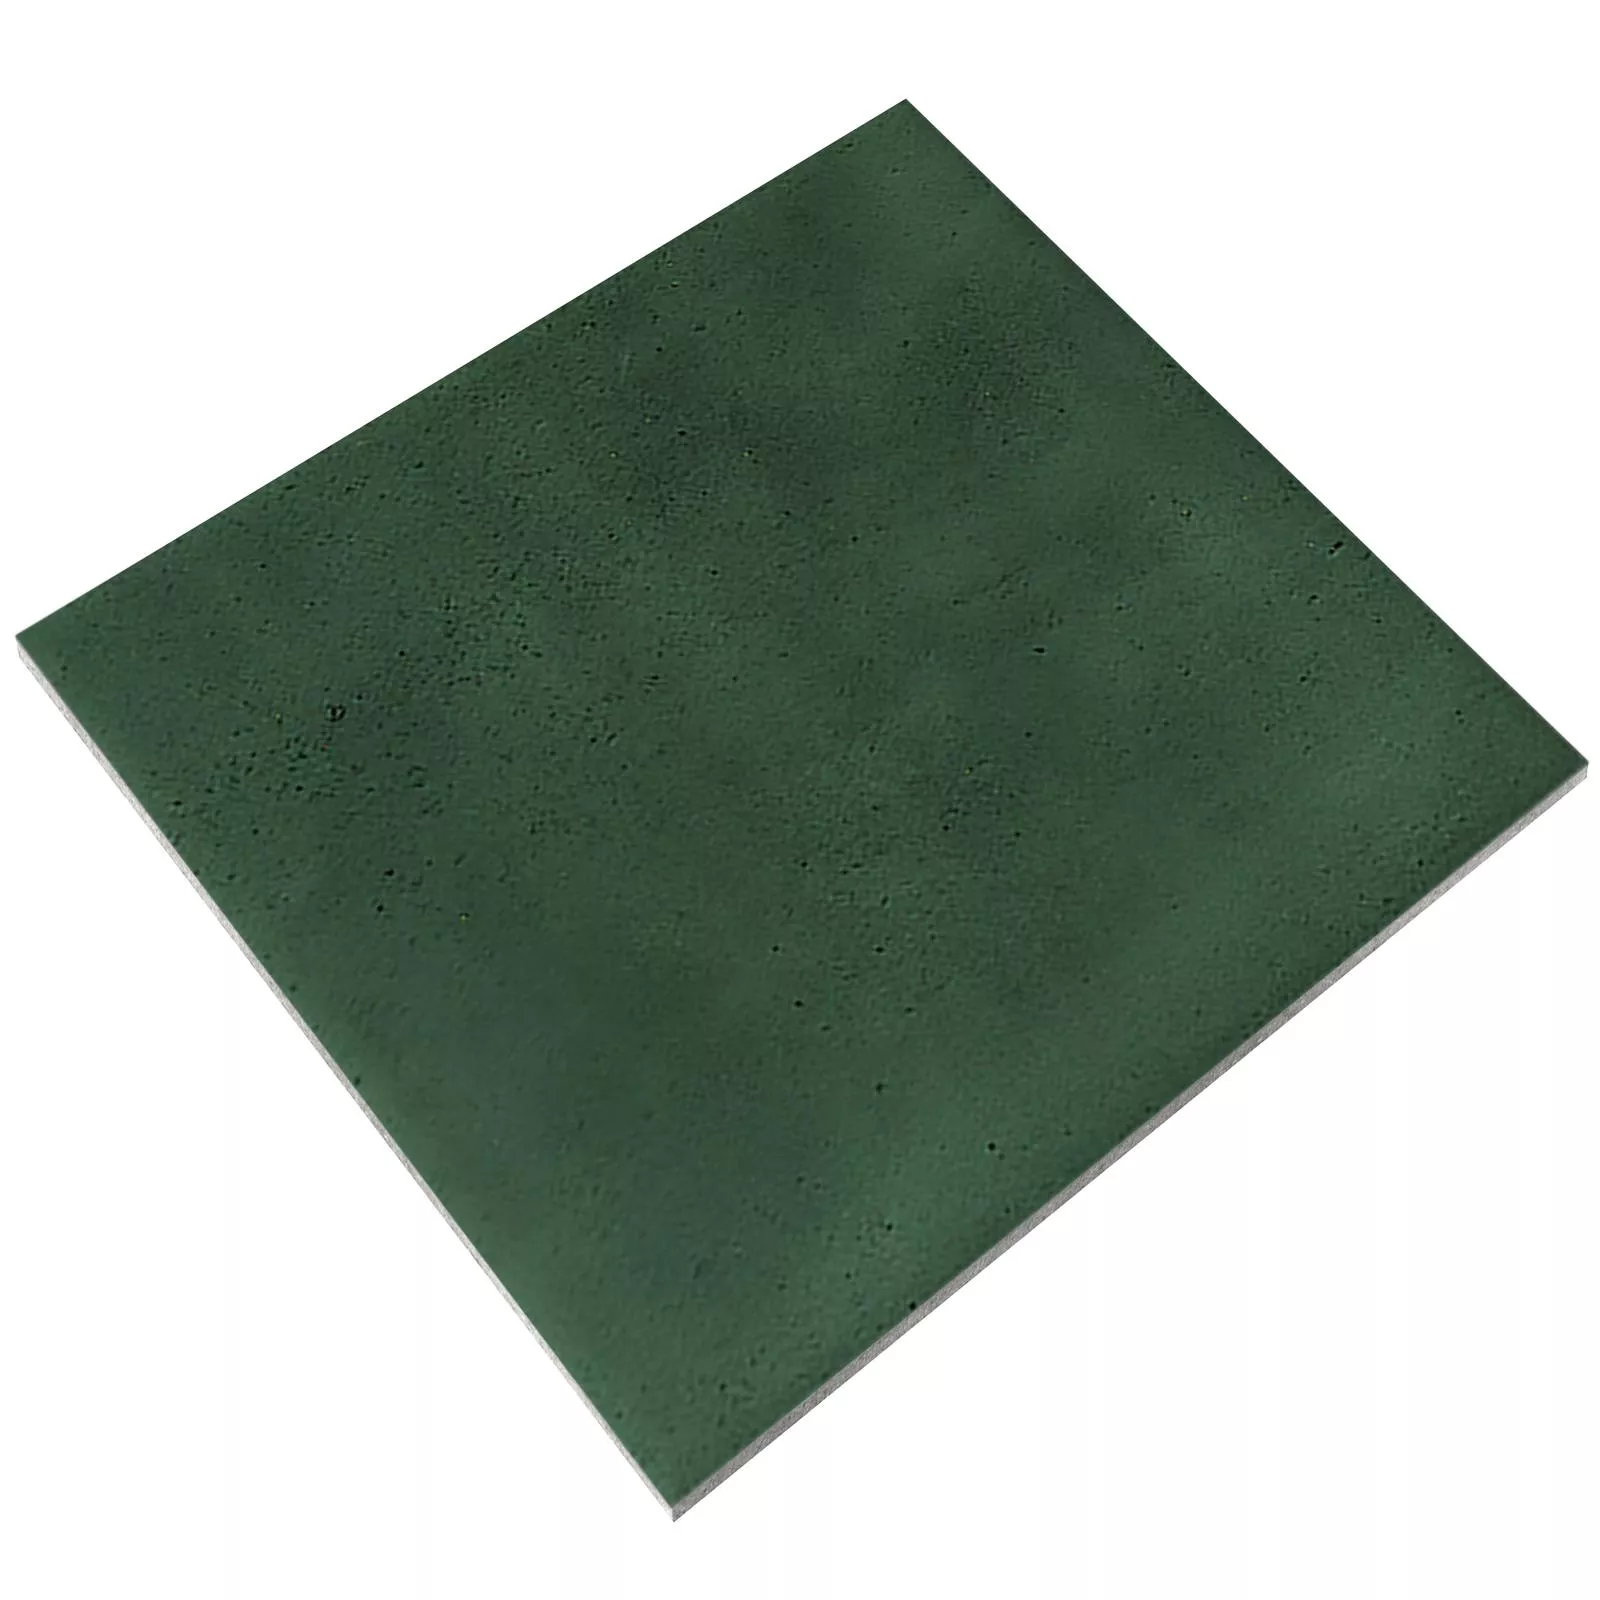 Próbka Płytki Ścienne Cap Town Błyszczący Karbowany 10x10cm Zielony